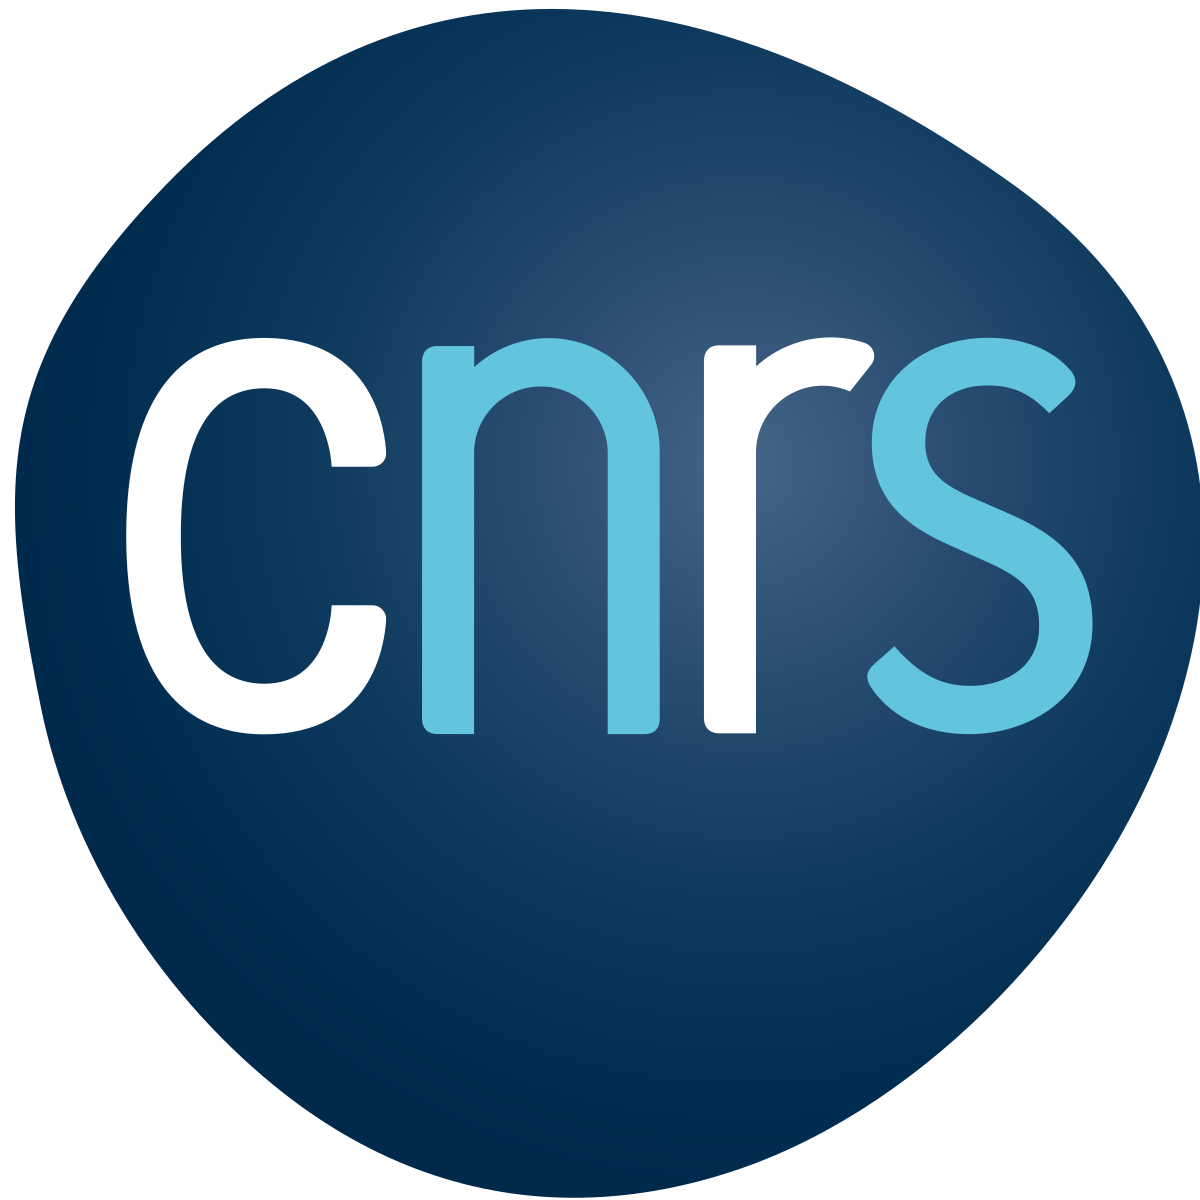 Entreprise CNRS